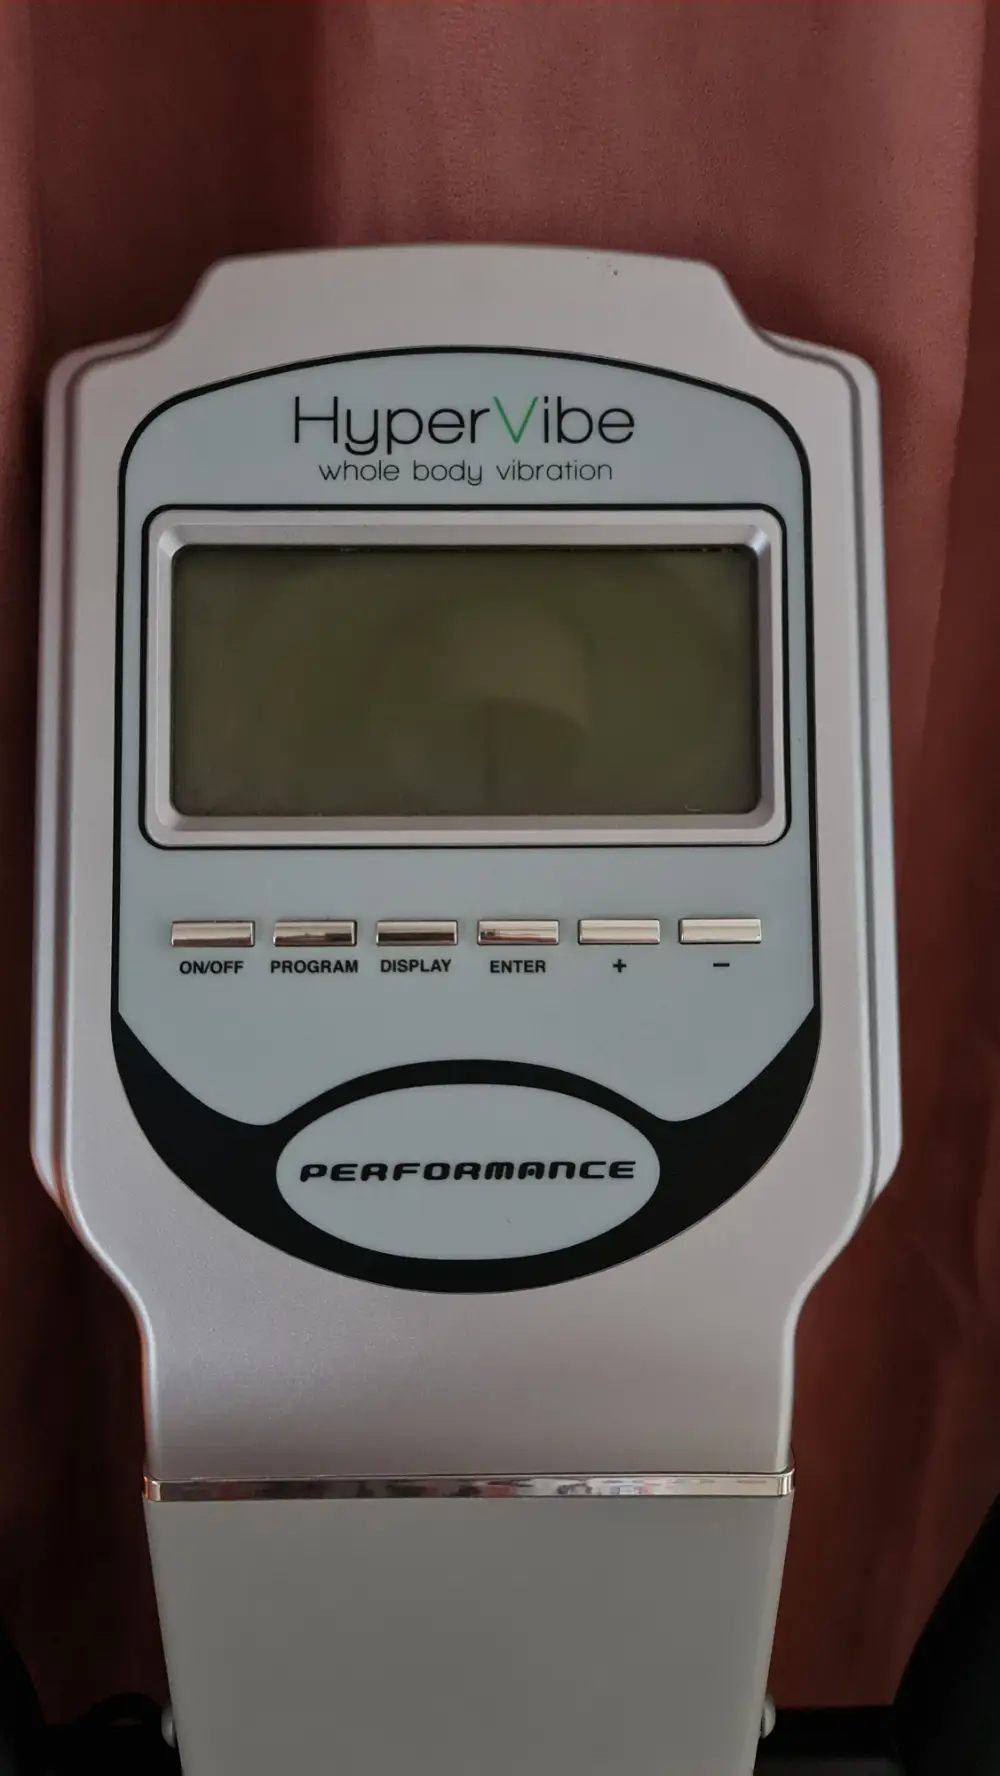 HyperVibe HyperVibe Whole Body Vibration